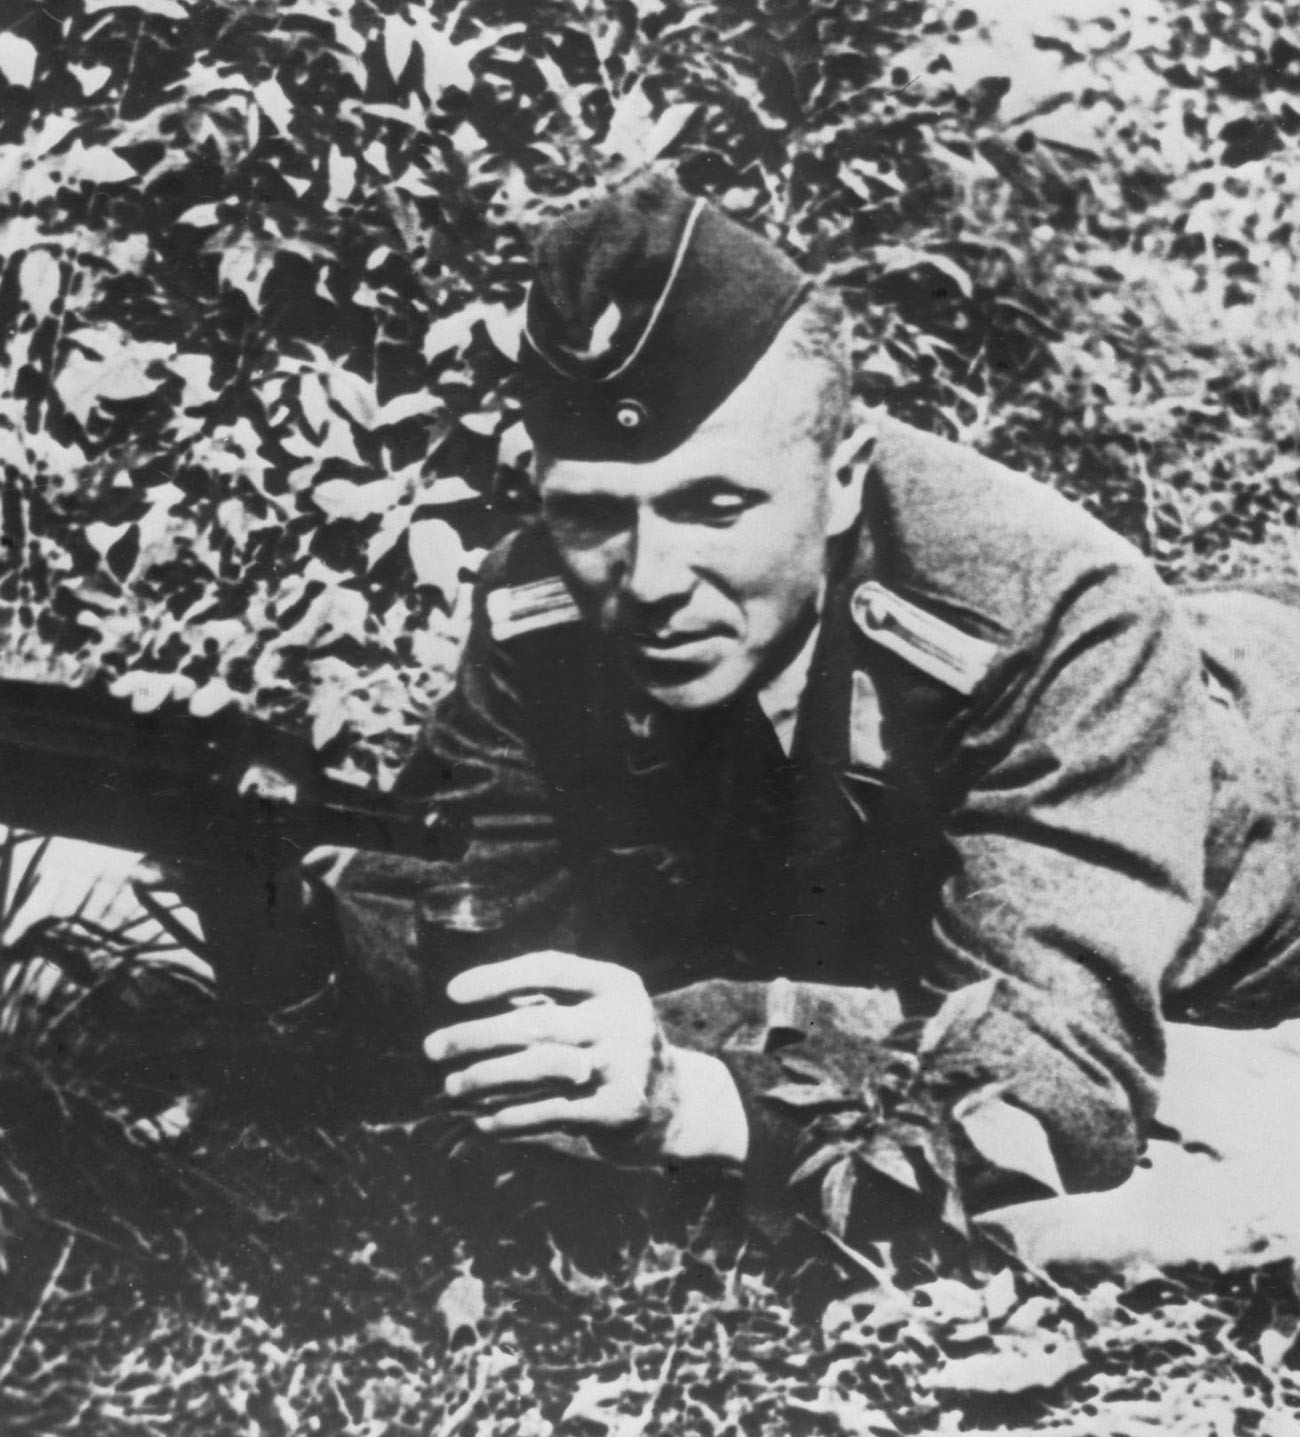 L'ufficiale dei servizi segreti sovietici Nikolaj Kuznetsov, comandante del distaccamento partigiano, con l'uniforme di un ufficiale tedesco